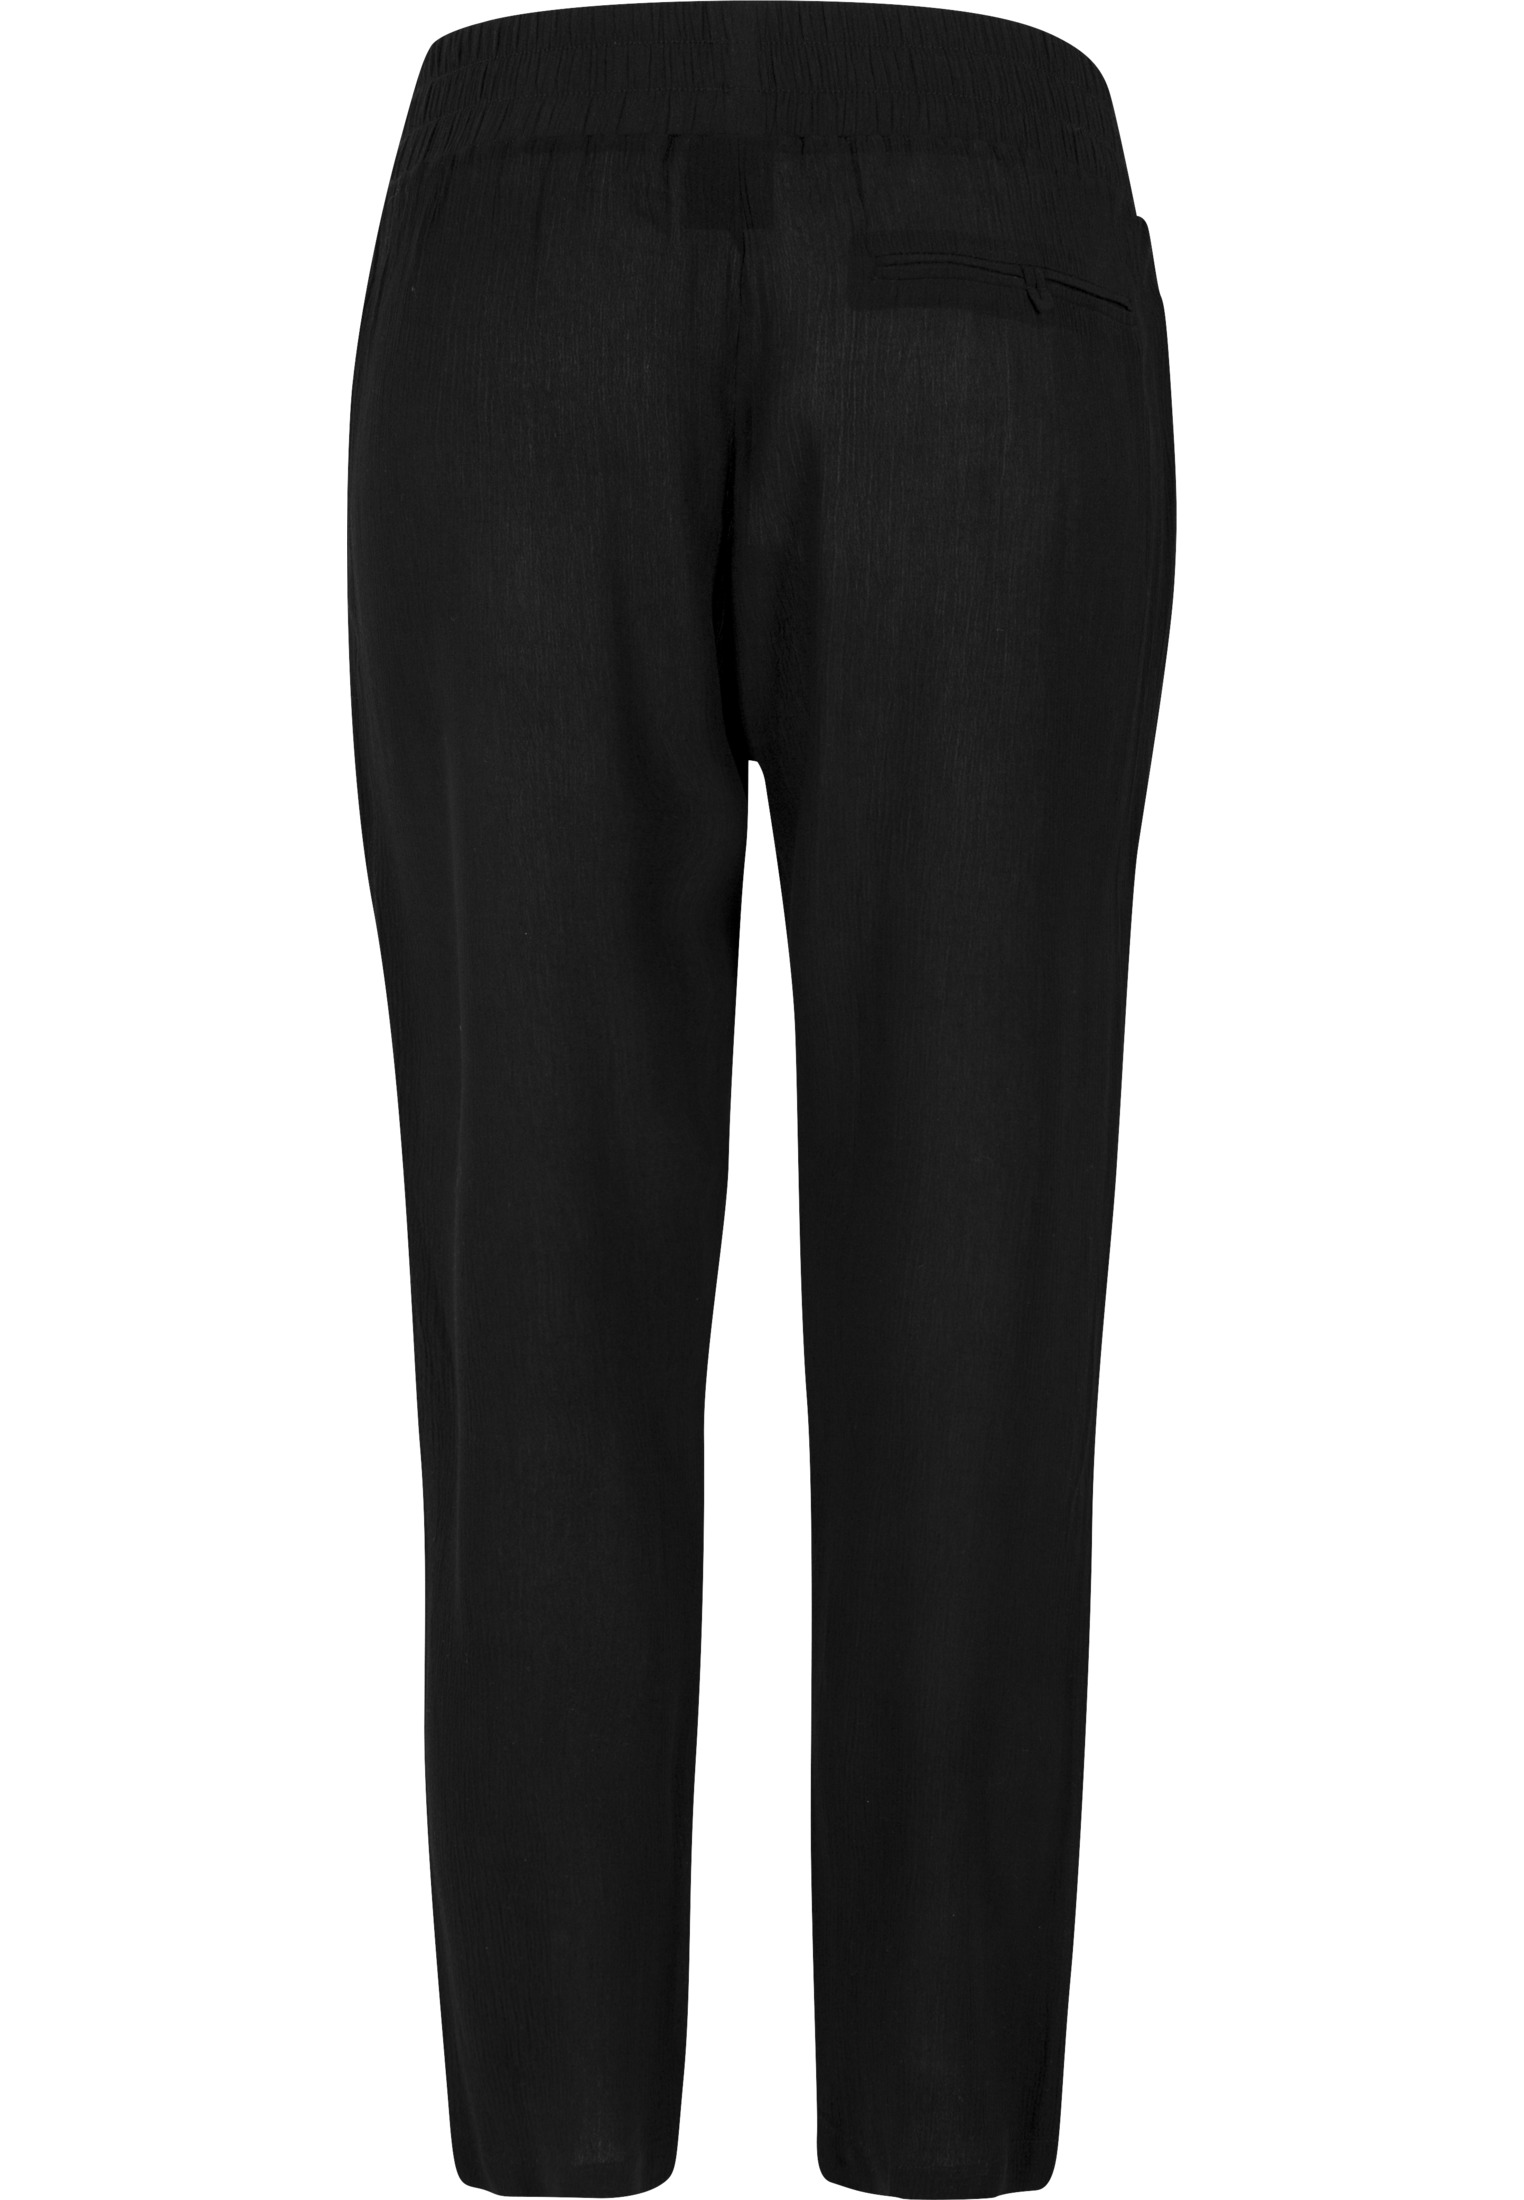 Hosen Ladies Beach Pants in Farbe black